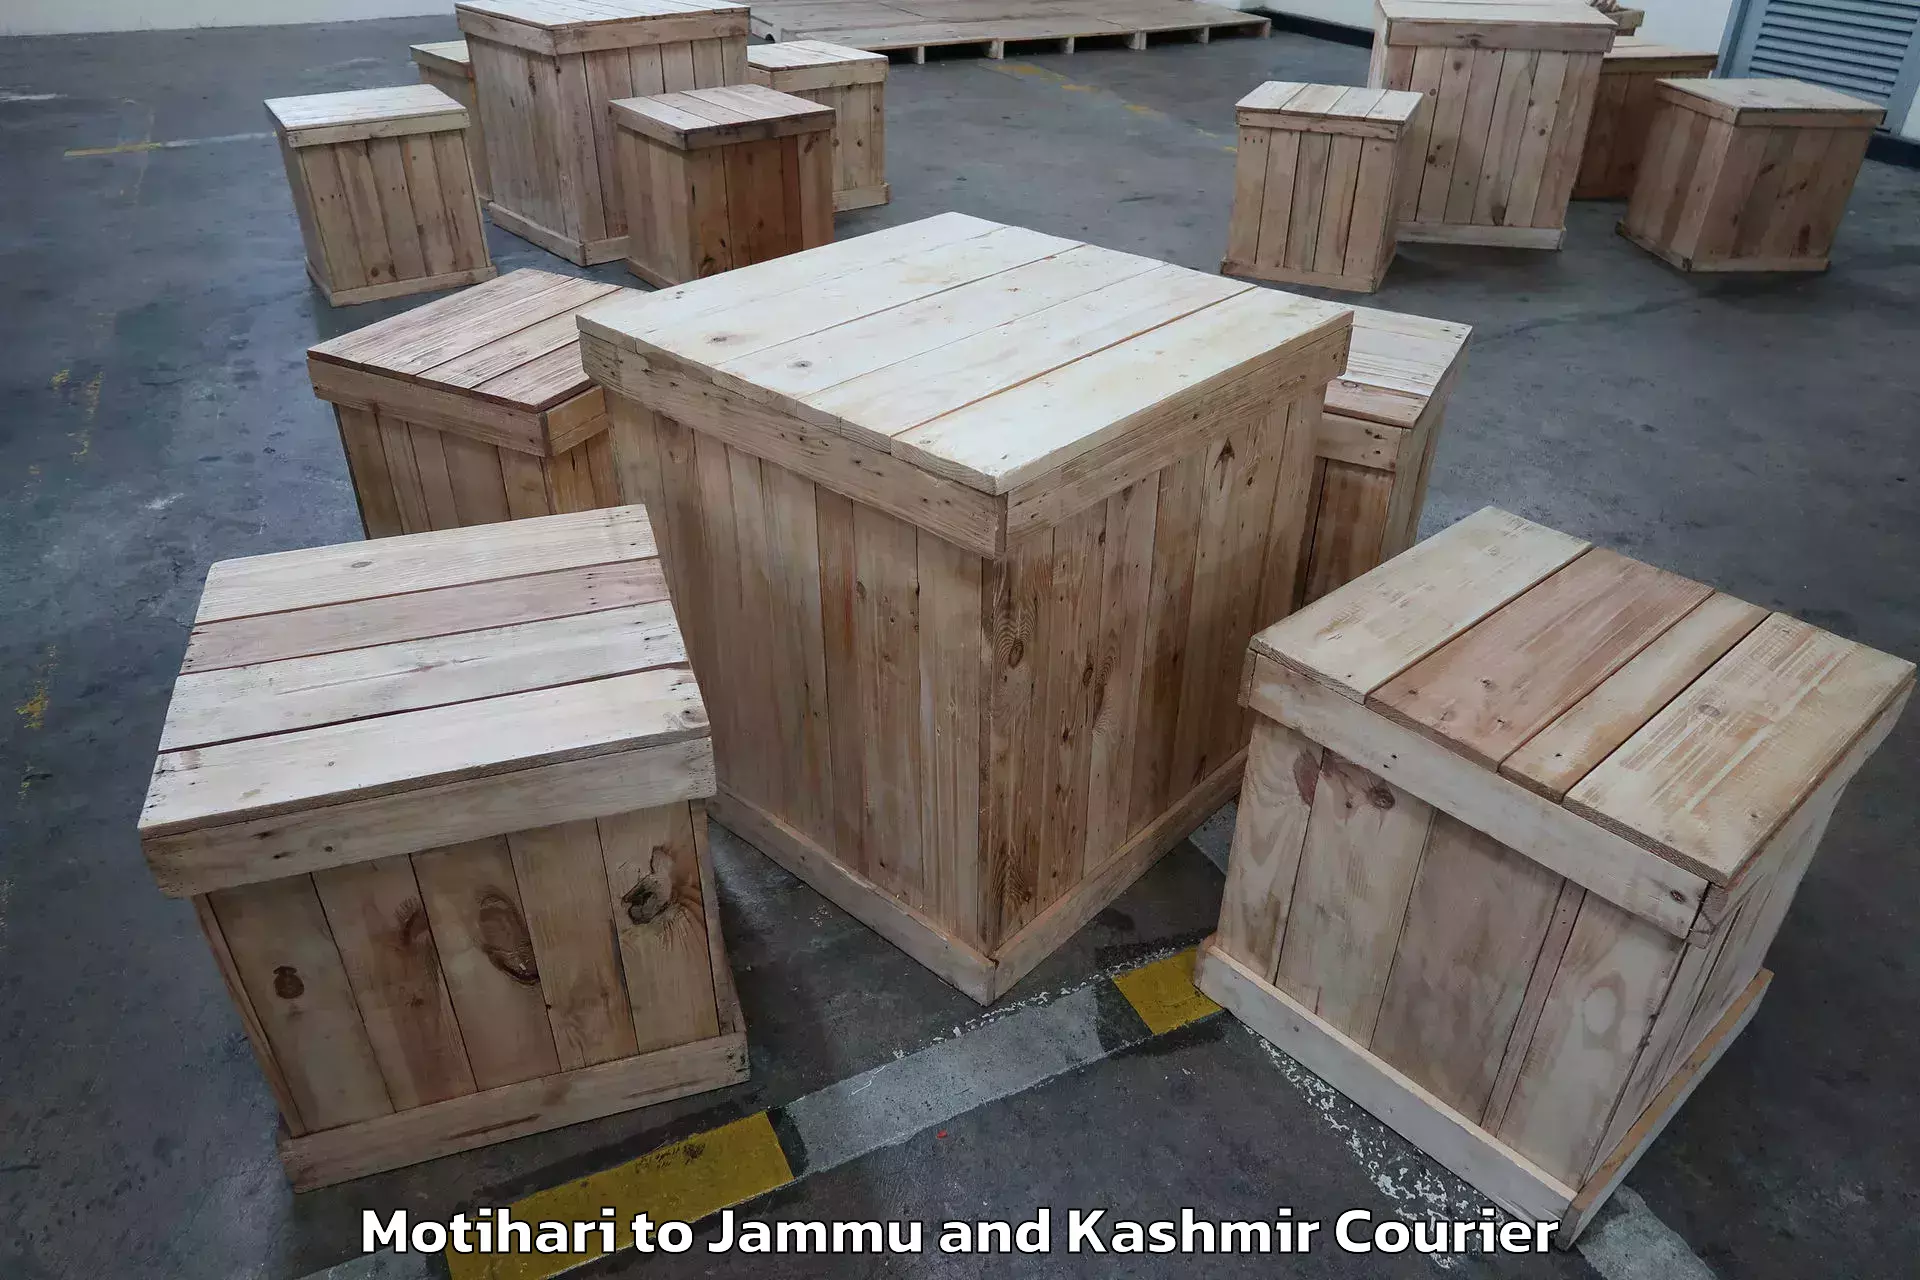 Full-service relocation Motihari to Jammu